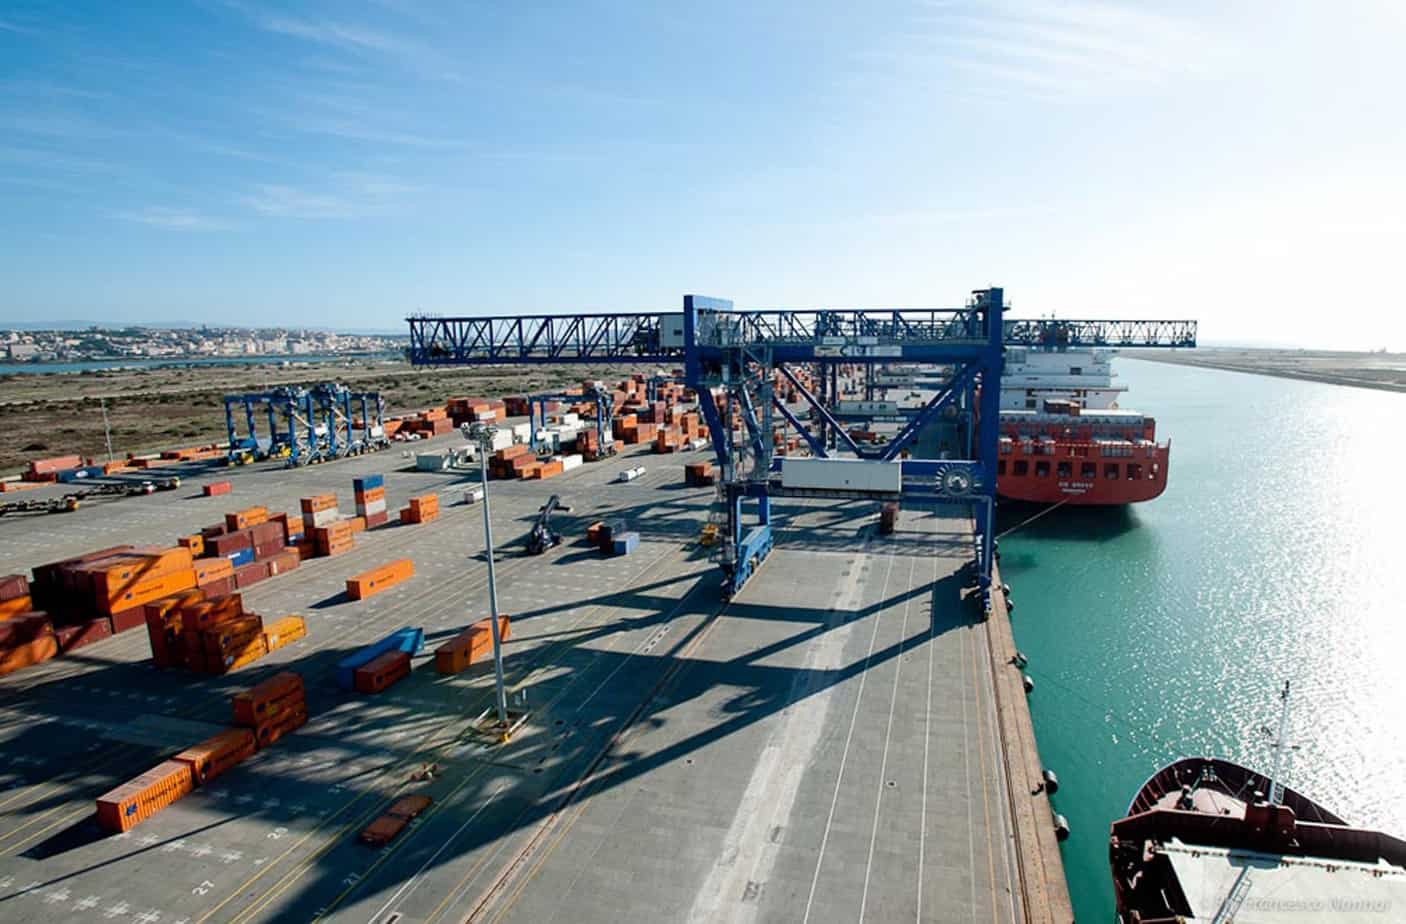 Una portacontainer attraccata alle banchine del porto canale